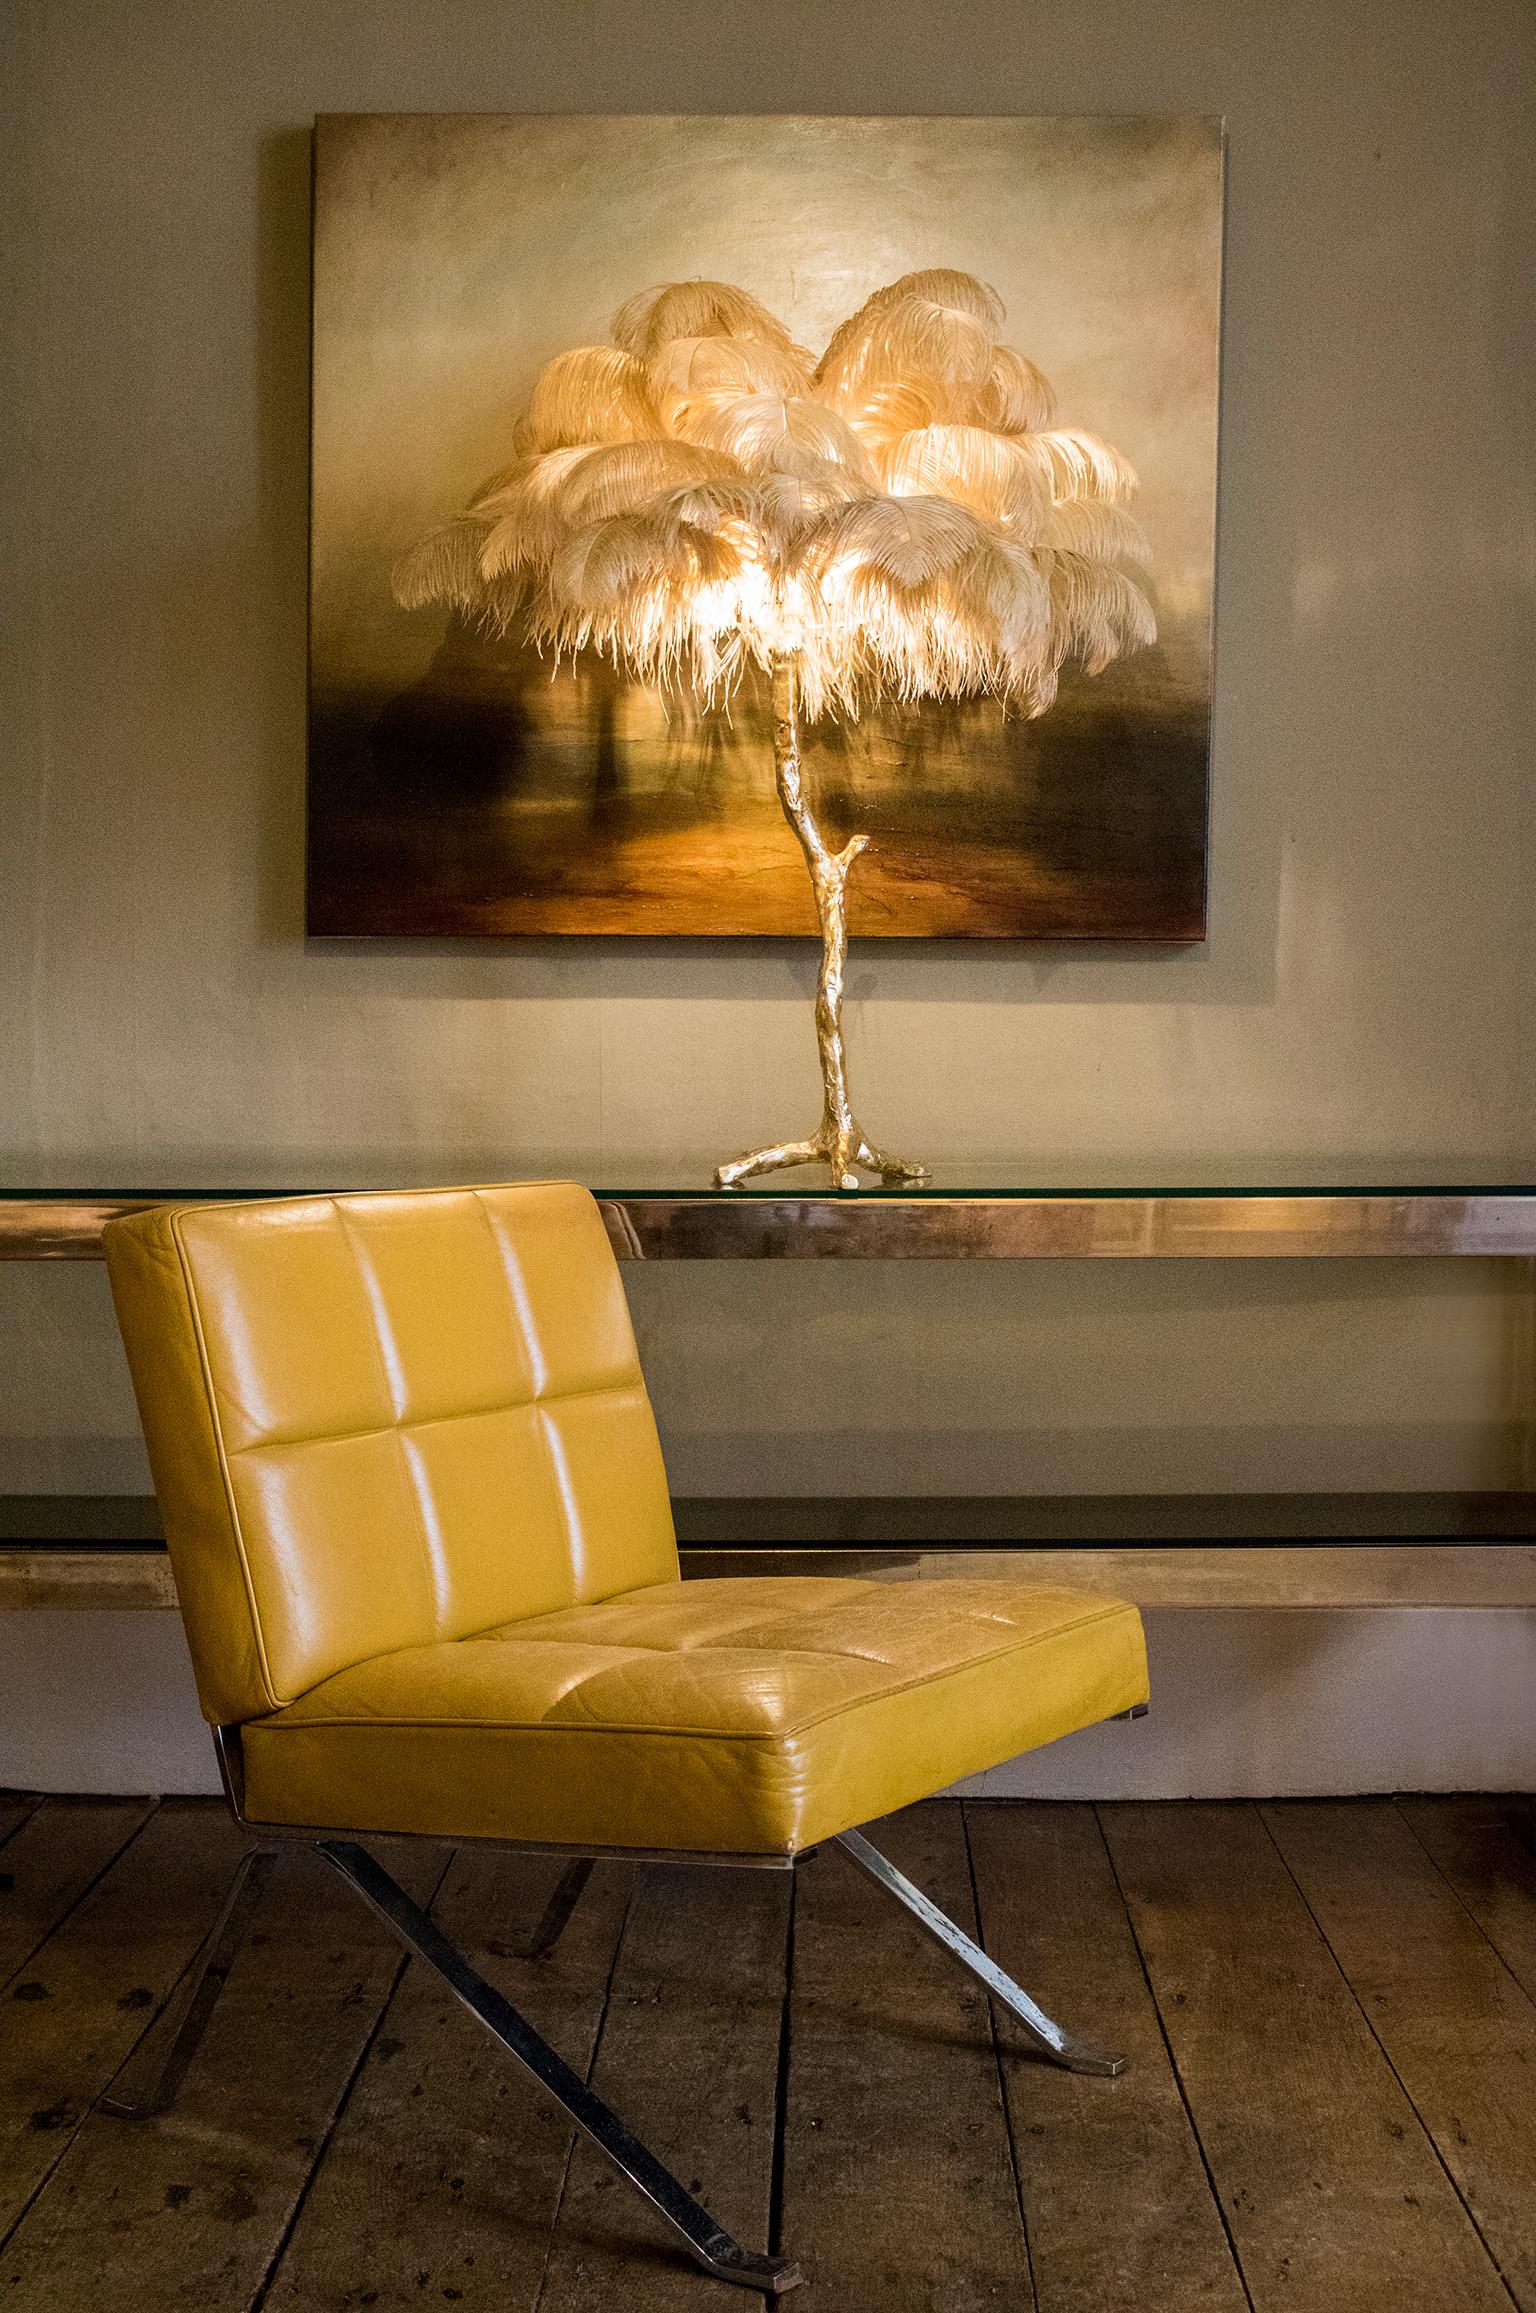 Unsere Feder-Tischleuchte ist eine Bijoux-Version der exquisiten, leuchtenden Straußen-Stehleuchte. Jedes Stück ist ein luxuriöses Statement für jedes Design- oder Stylingprojekt - perfekt im Paar! 

Die Feder-Tischleuchte ist ideal für ein